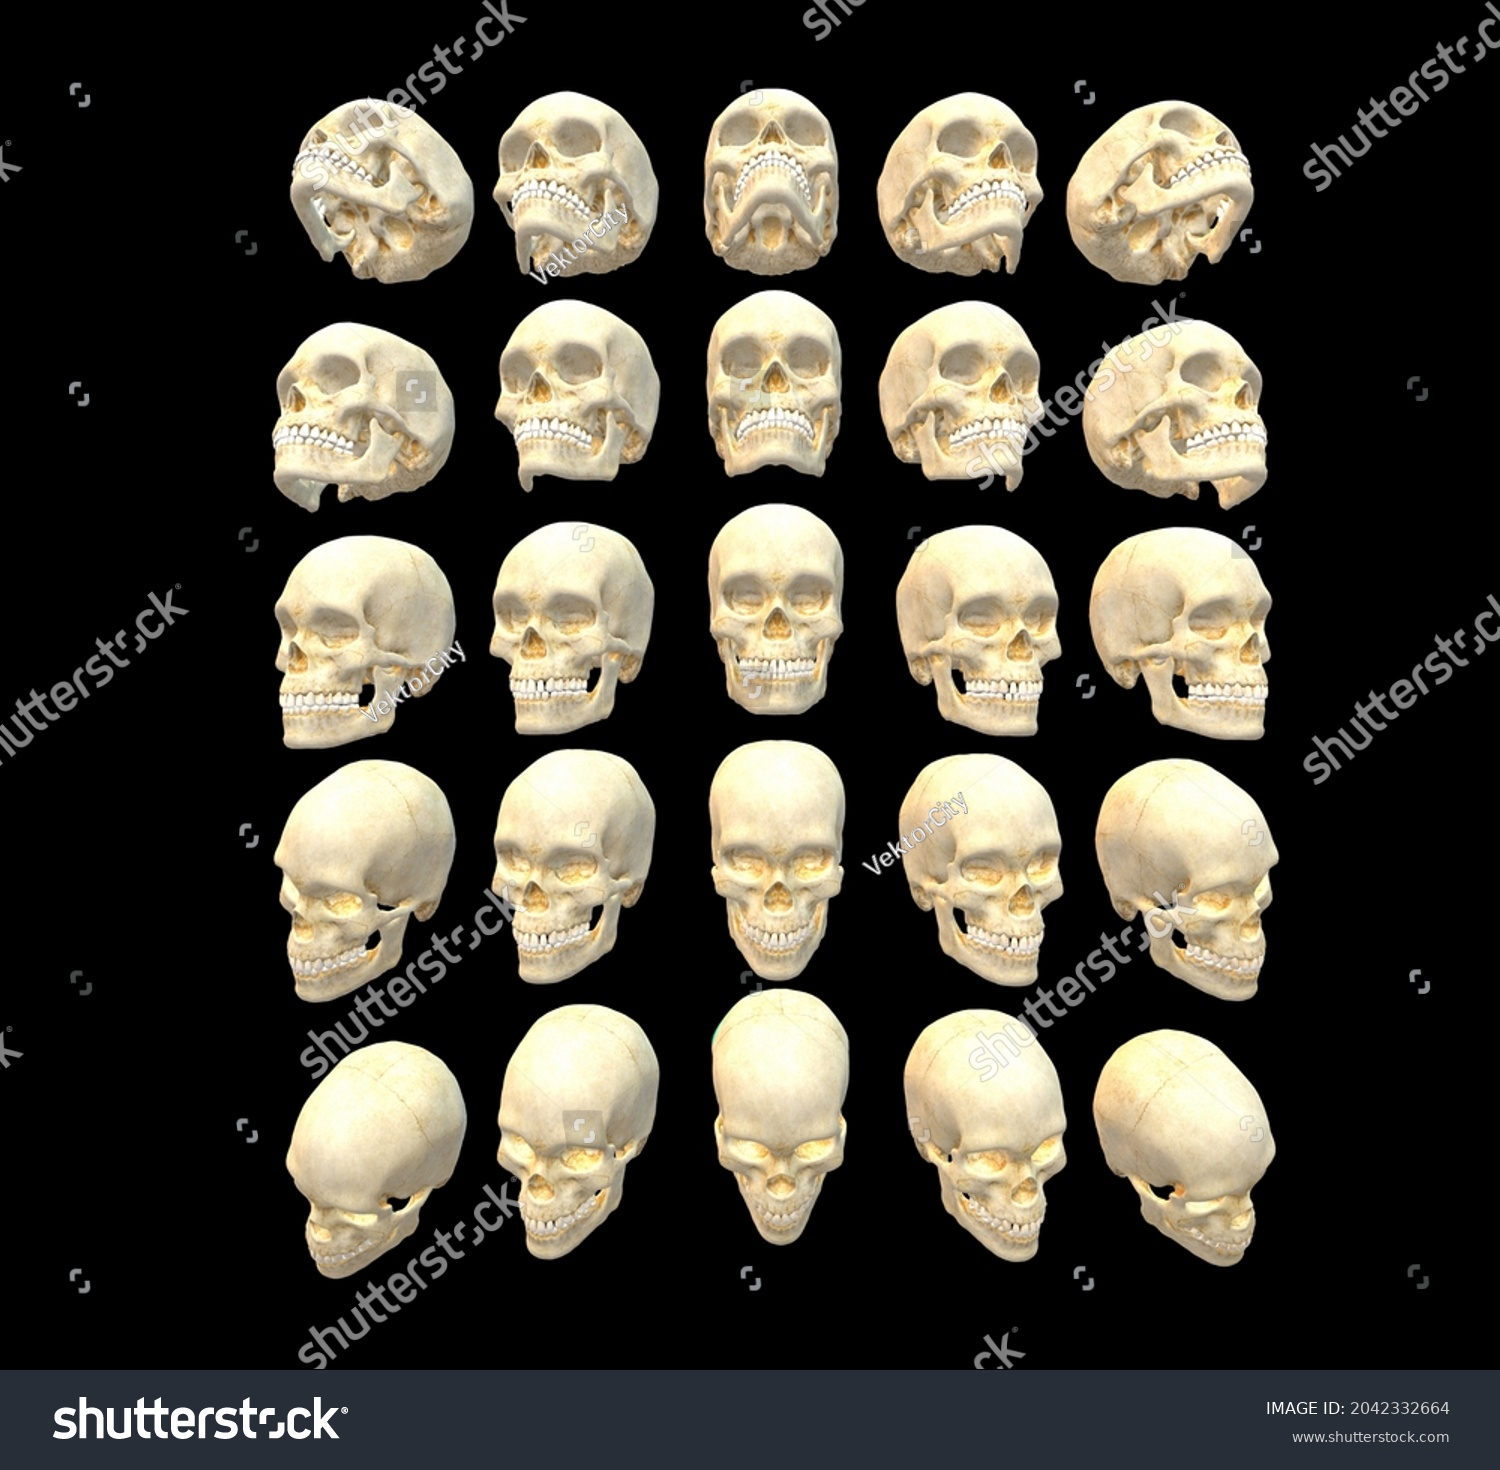 336件の「skull Reference」の画像、写真素材、ベクター画像 Shutterstock